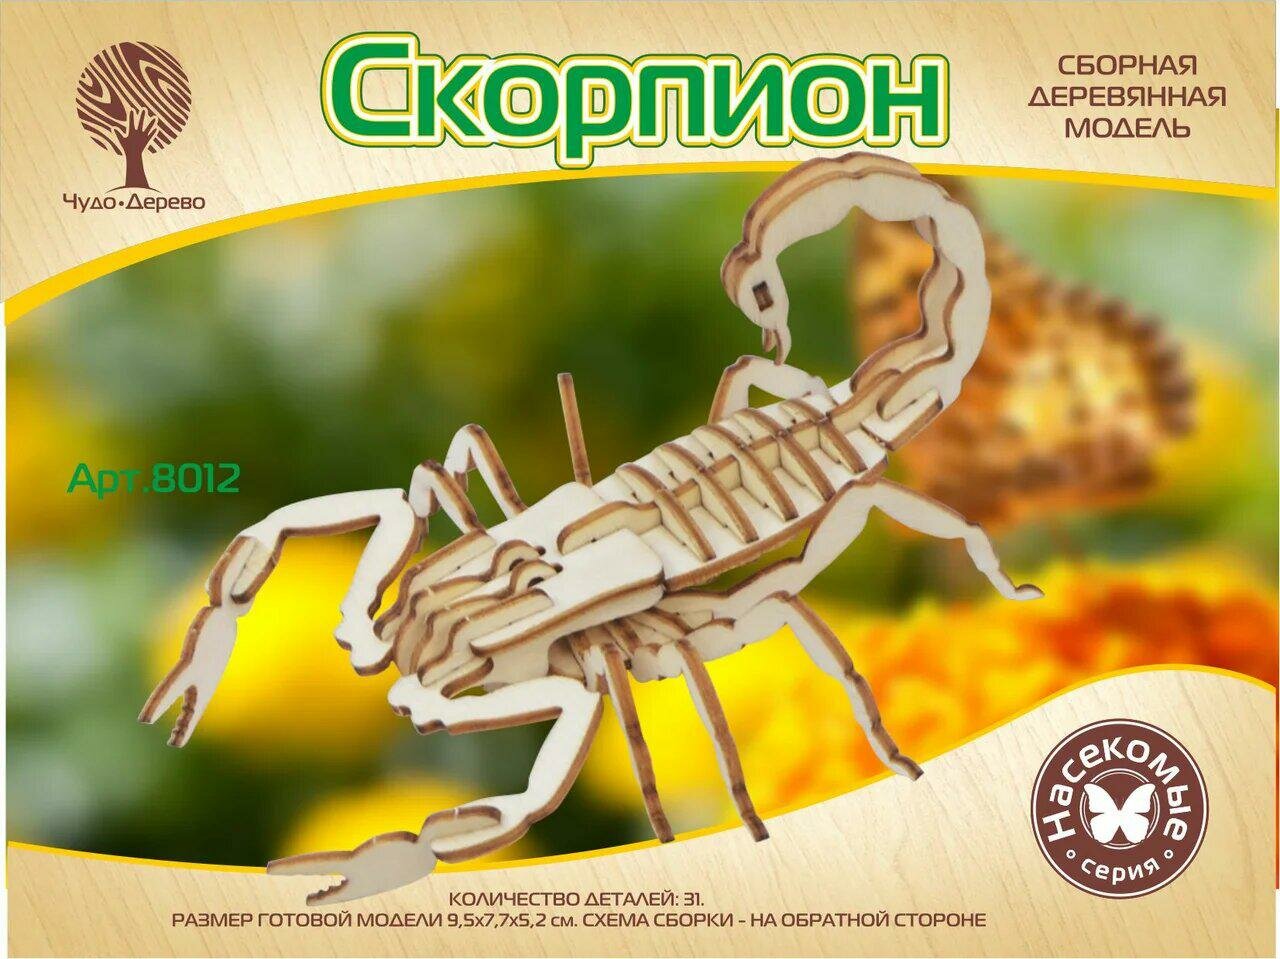 Скорпион mini (8012) ВГА - фото №1